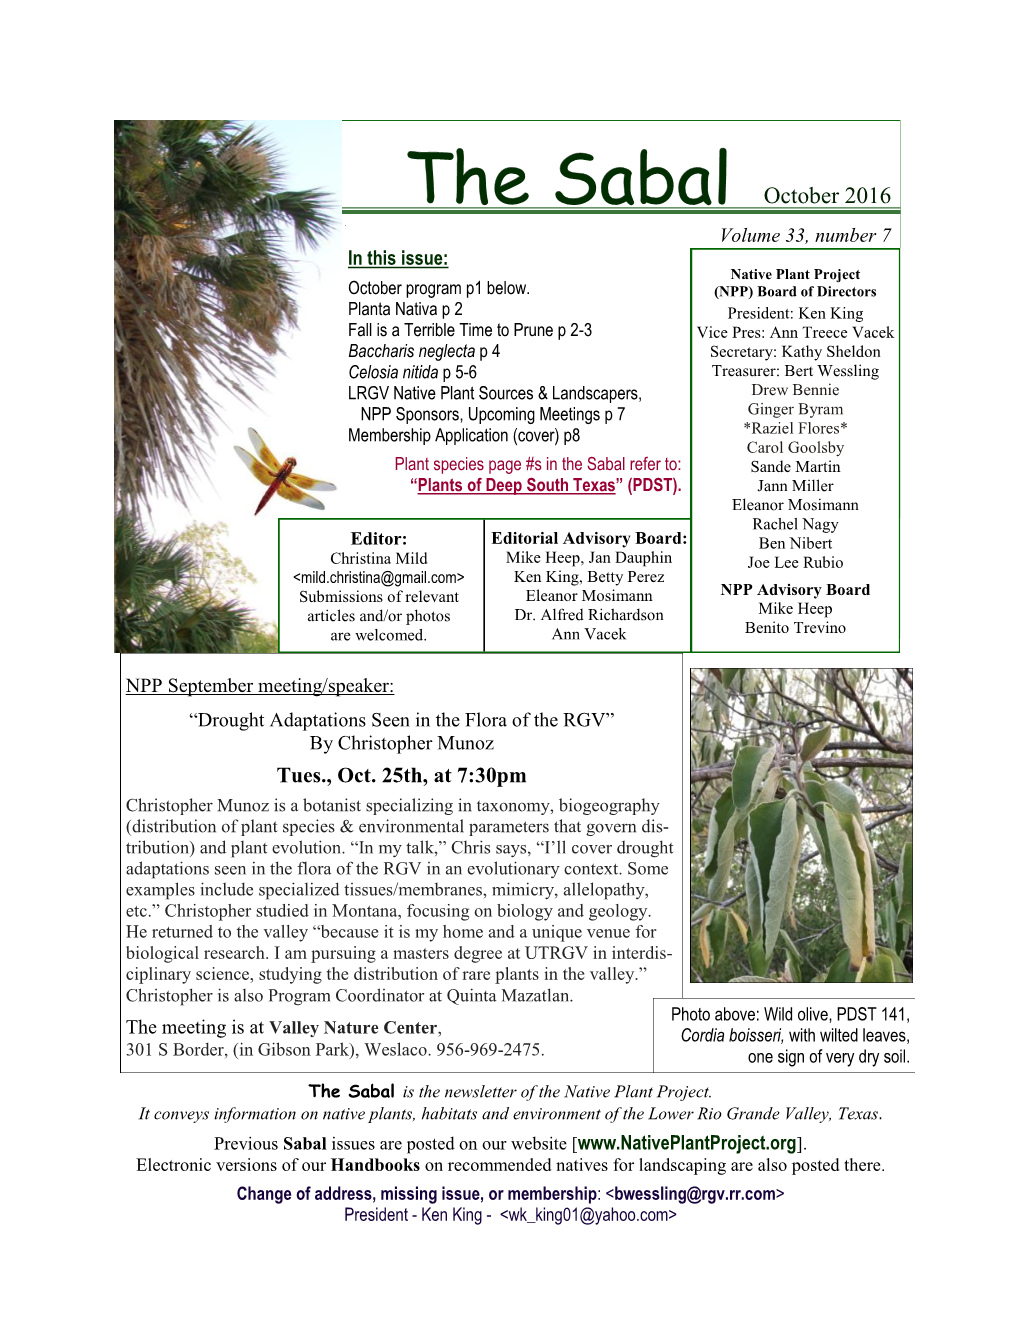 The Sabal October 2016 Volume 33, Number 7